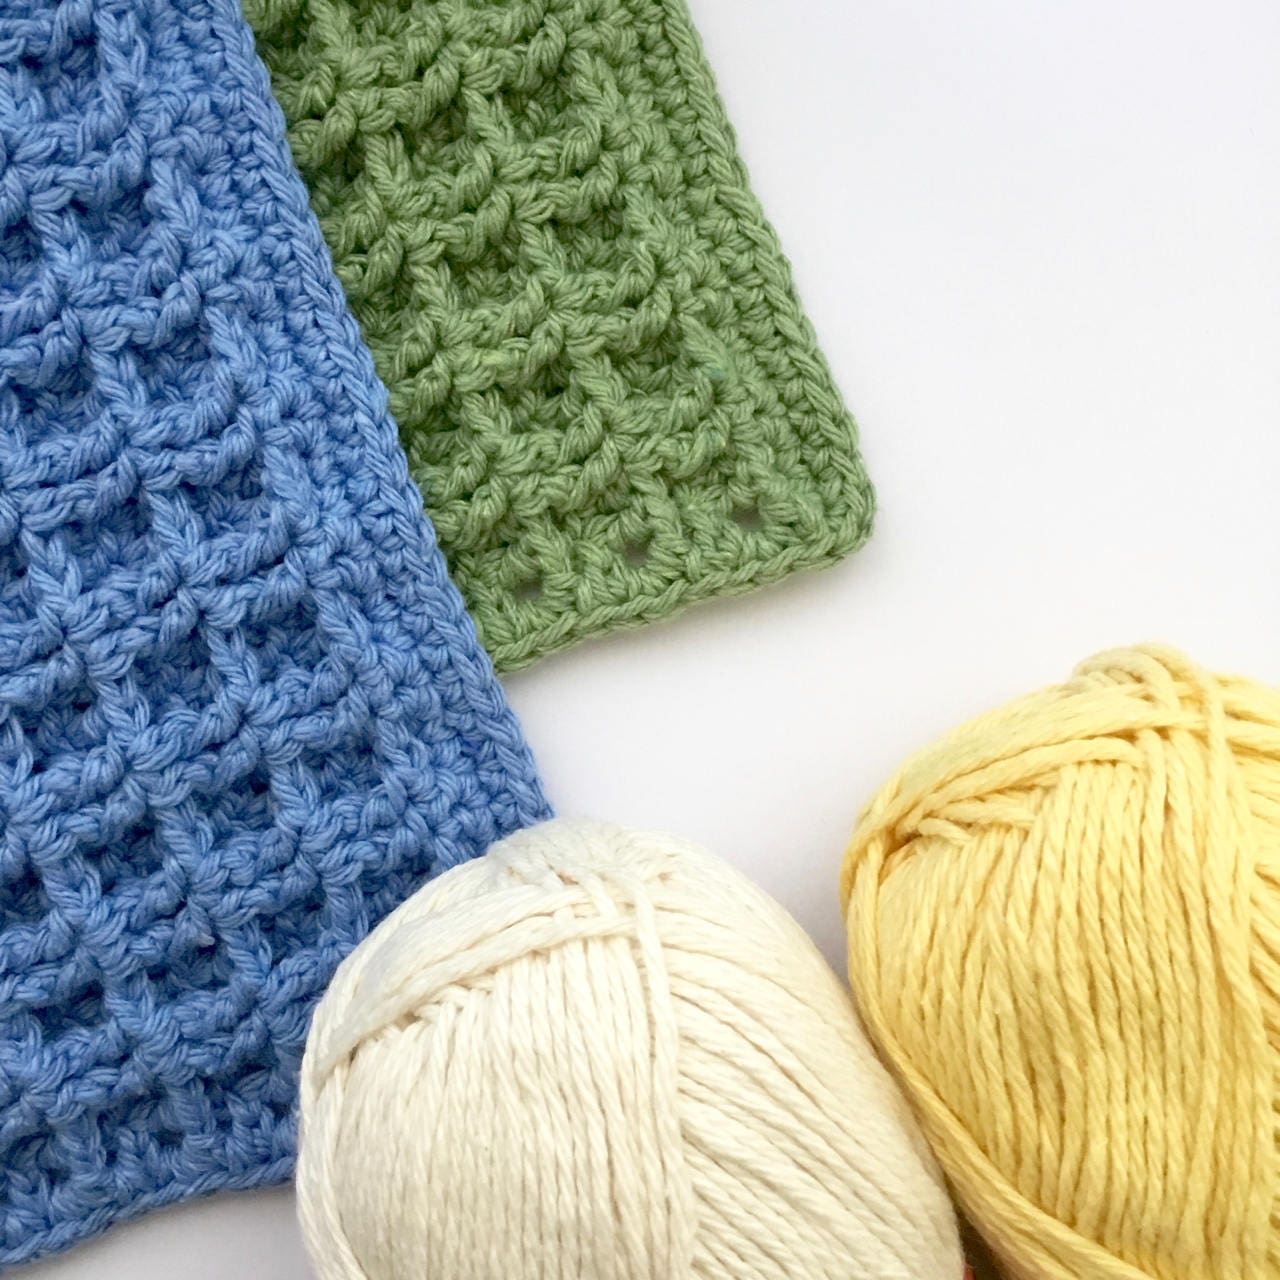  YIFANTER Crochet Kit for Beginners DIY Knitting